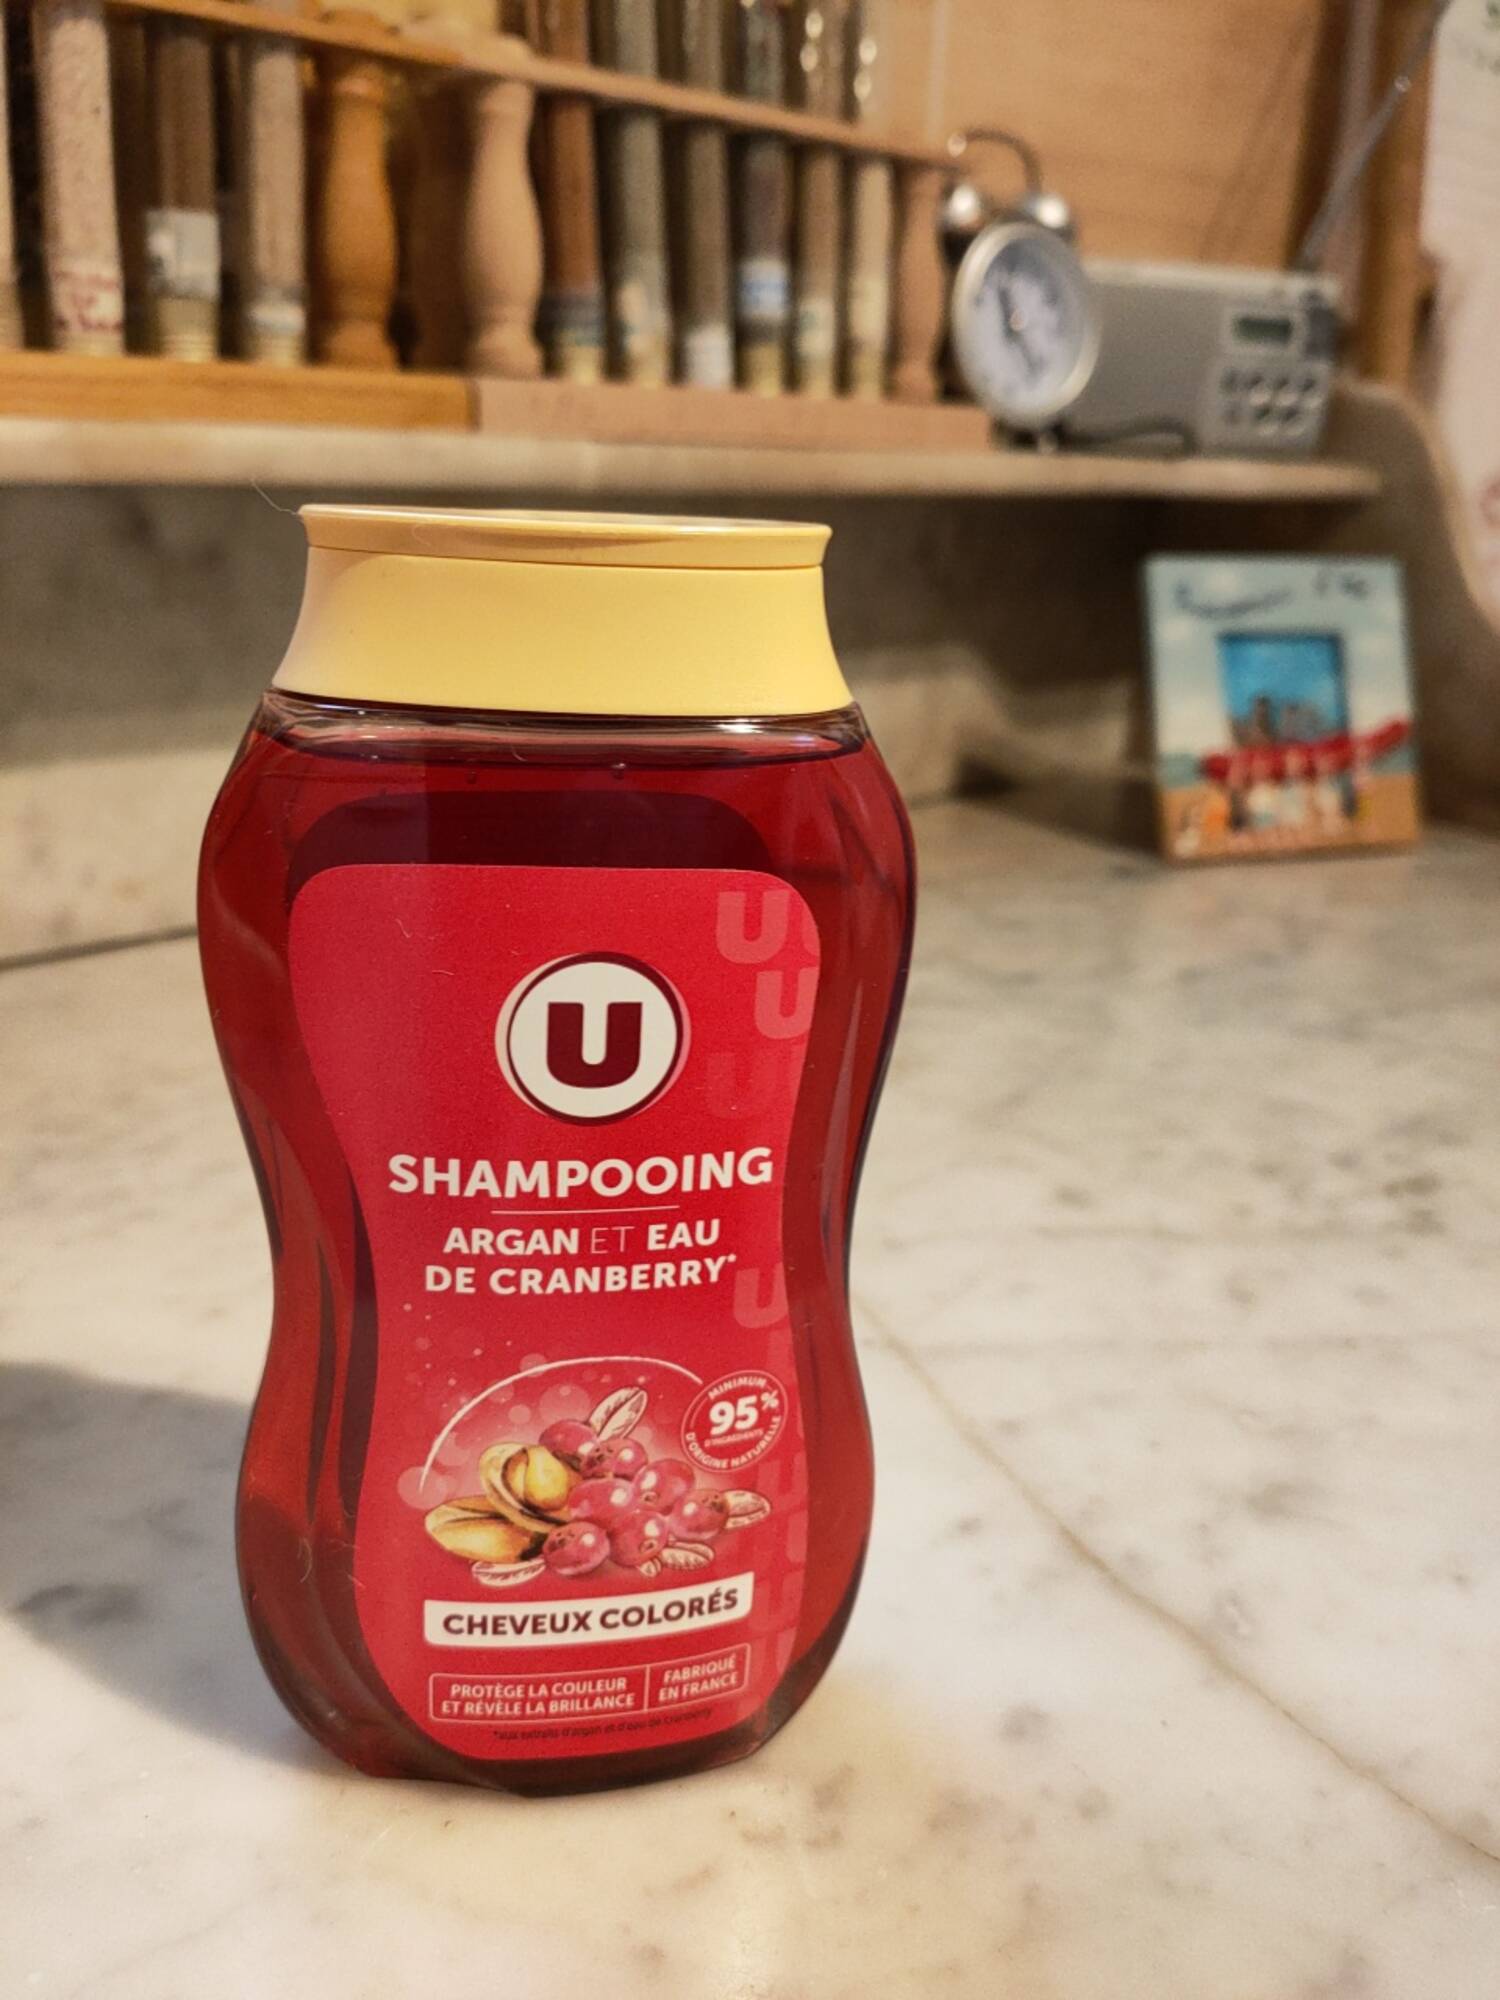 BY U - MAGASINS U - Cheveux colorés - Shampooing argan et eau de cranberry 